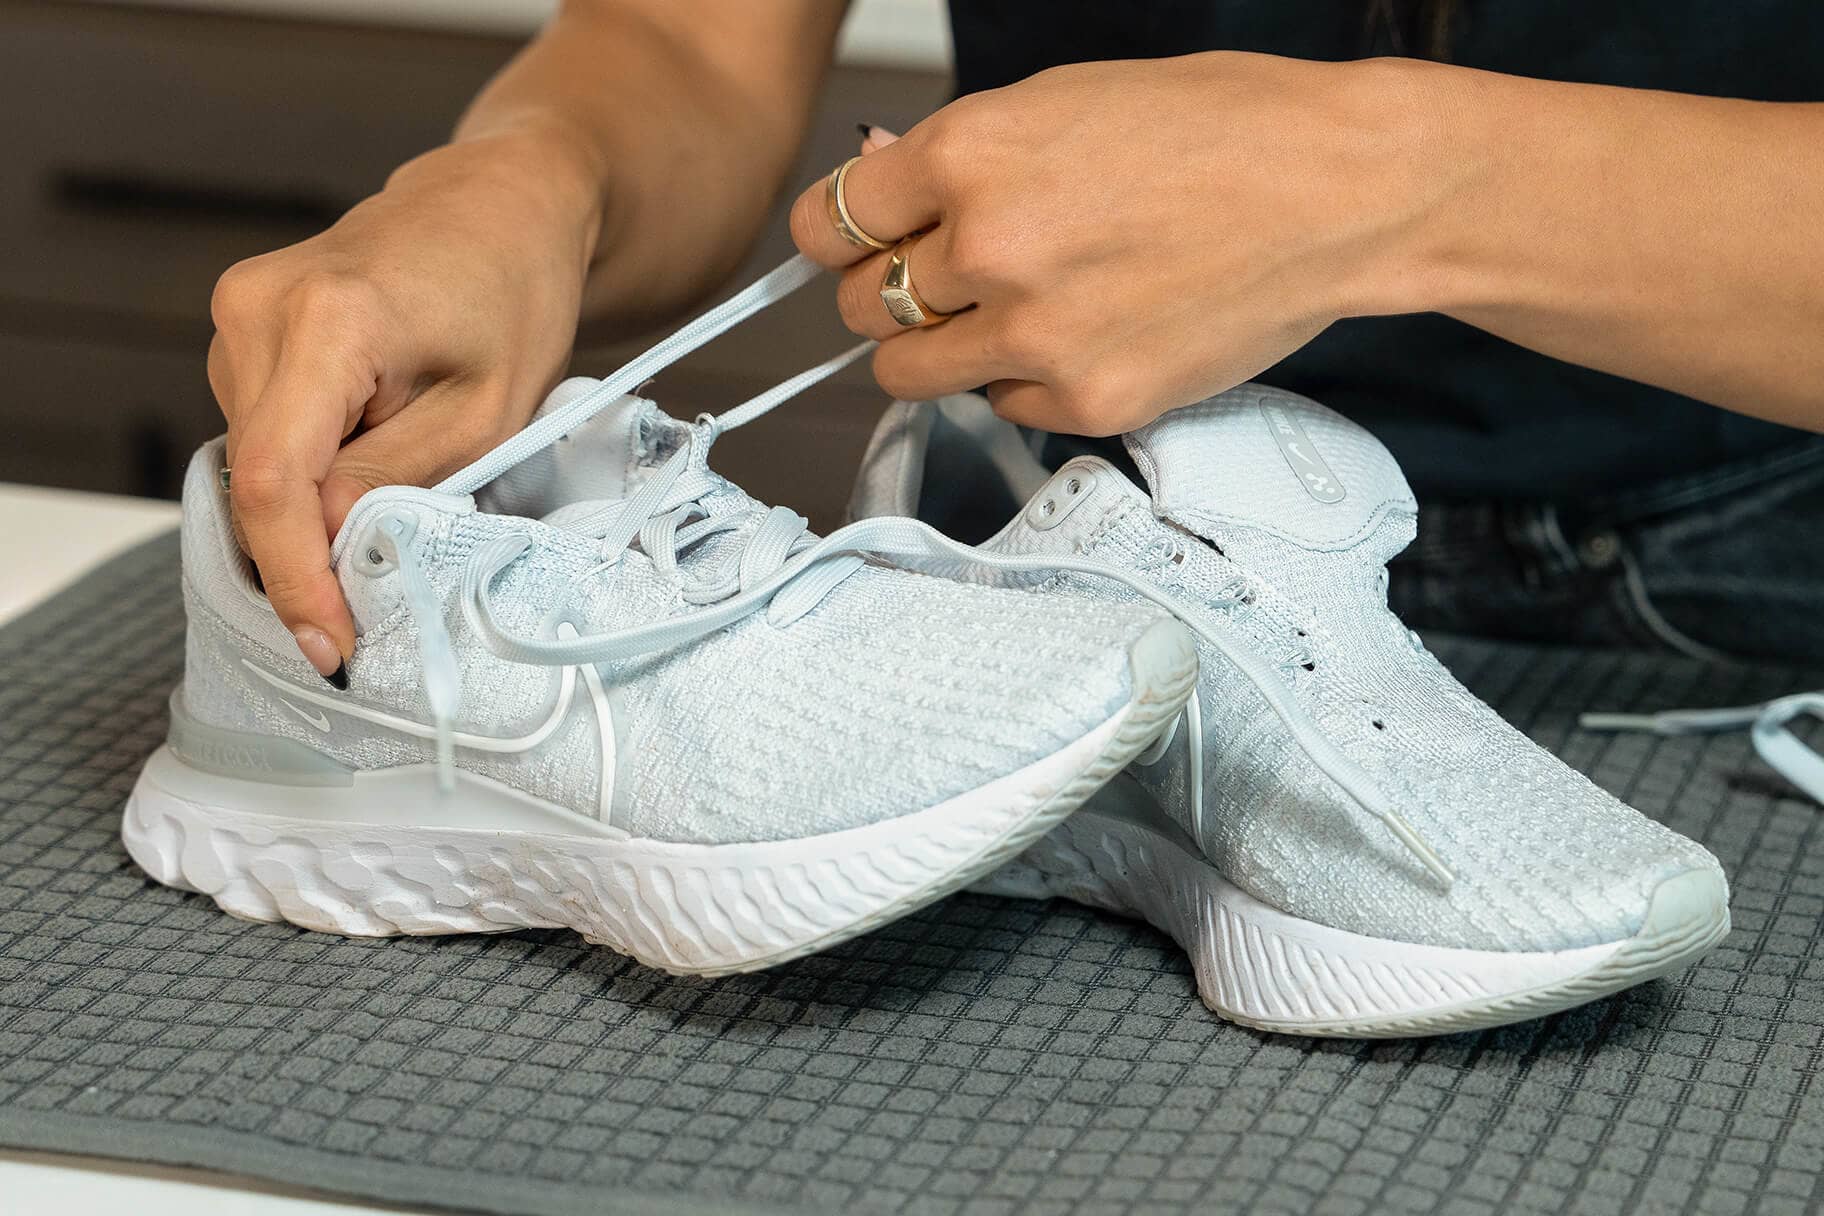 Guggenheim Museum Schema rollen Tips om schoenen met mesh schoon te maken. Nike NL